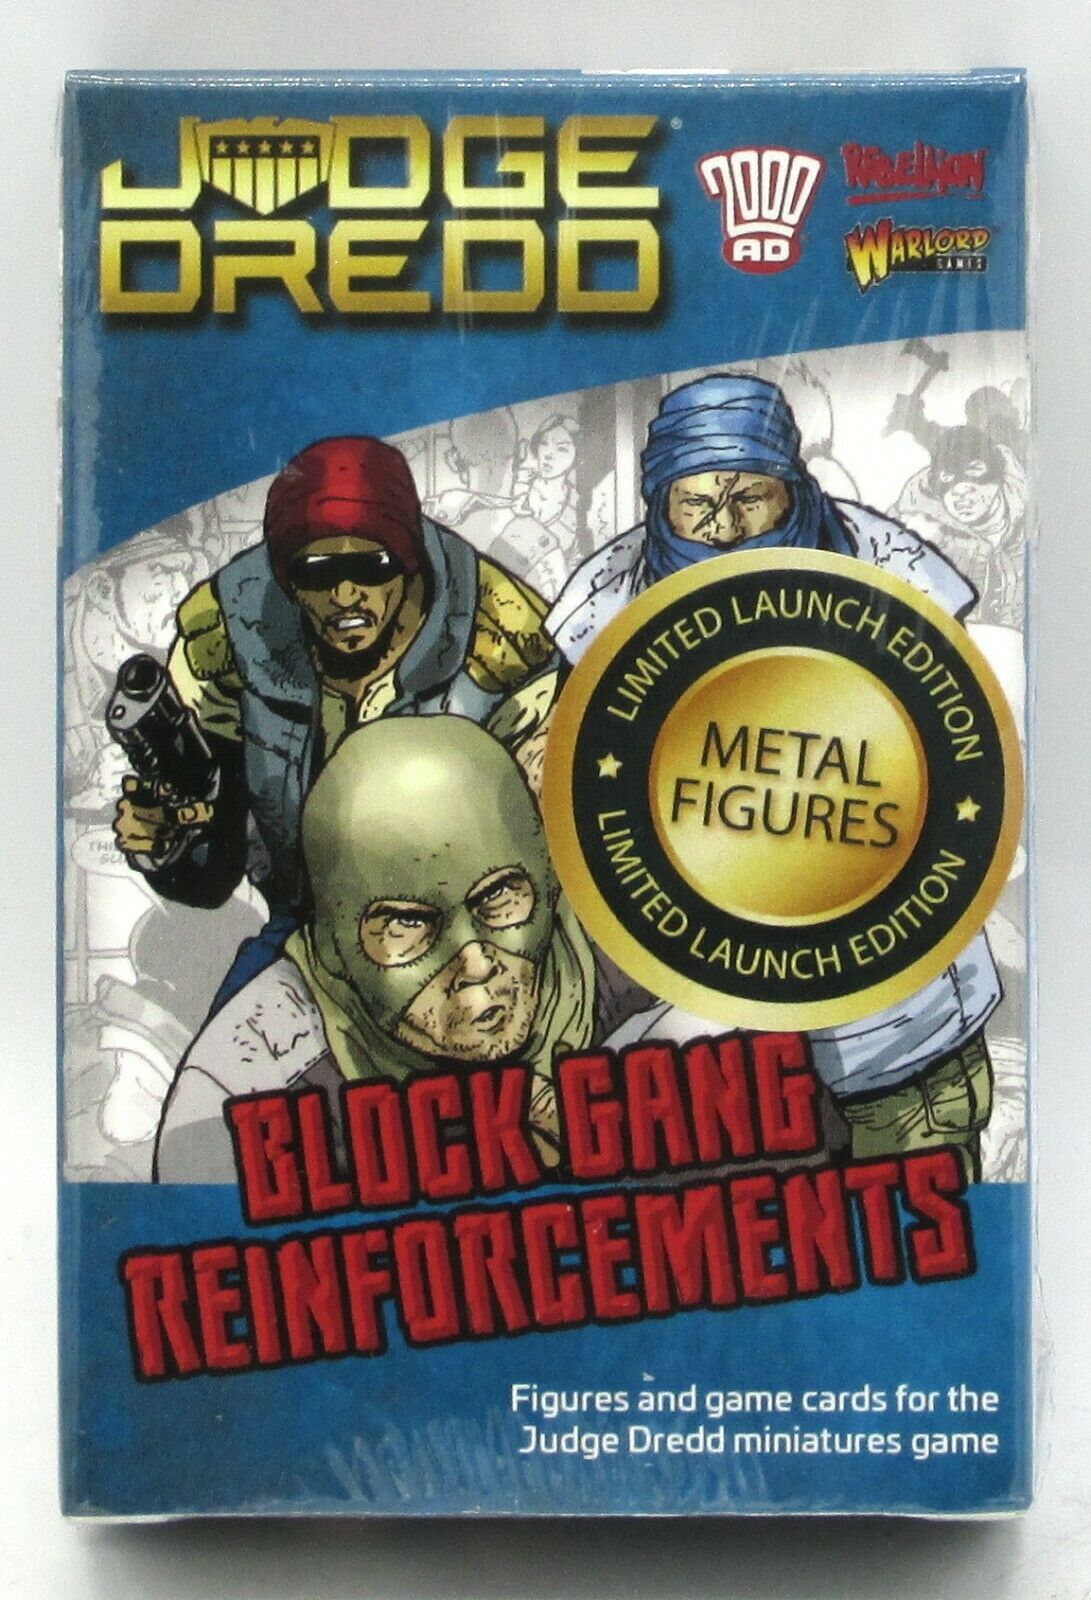 Dredd Block Gang Reinforcement